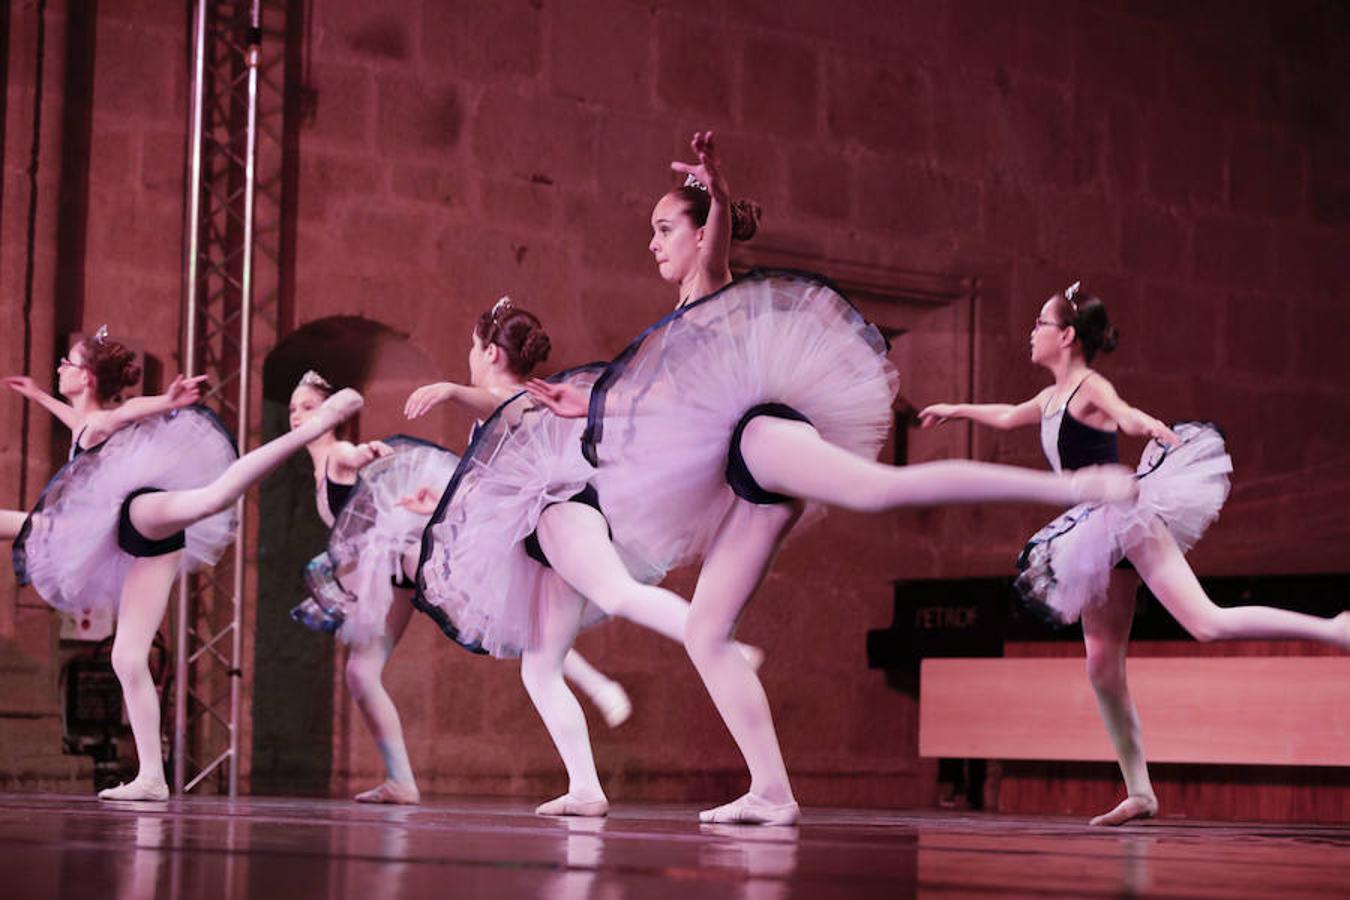 El complejo cultural San Francisco acoge la gala de final de curso de los alumnos del Conservatorio Elemental de Danza de la Diputación cacereña